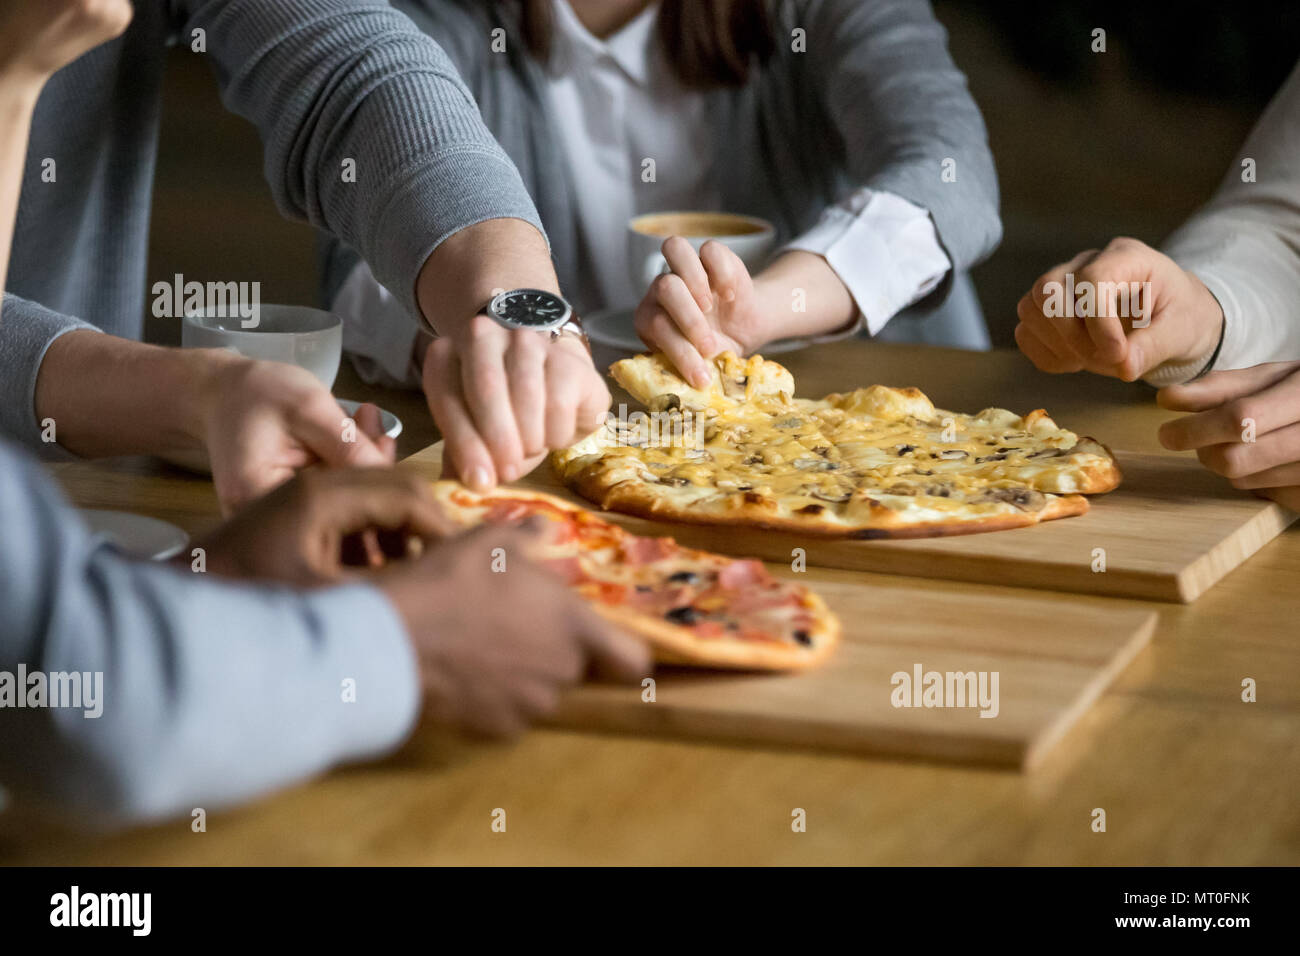 Les mains de diverses personnes prenant des tranches de pizza pizzeria à manger Banque D'Images